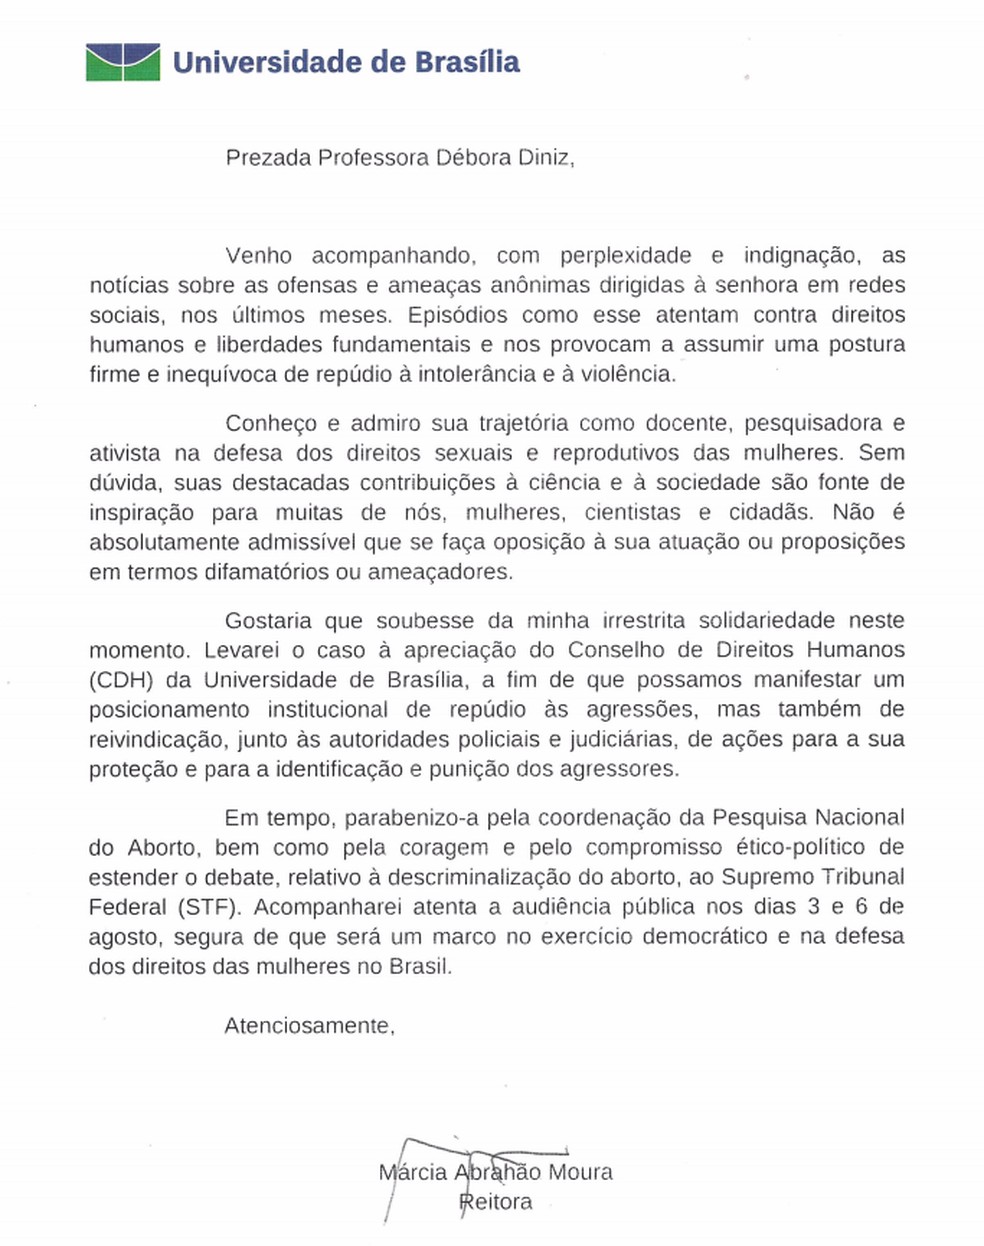 Carta enviada pela reitoria da UnB à professora Debora Diniz (Foto: Reprodução)